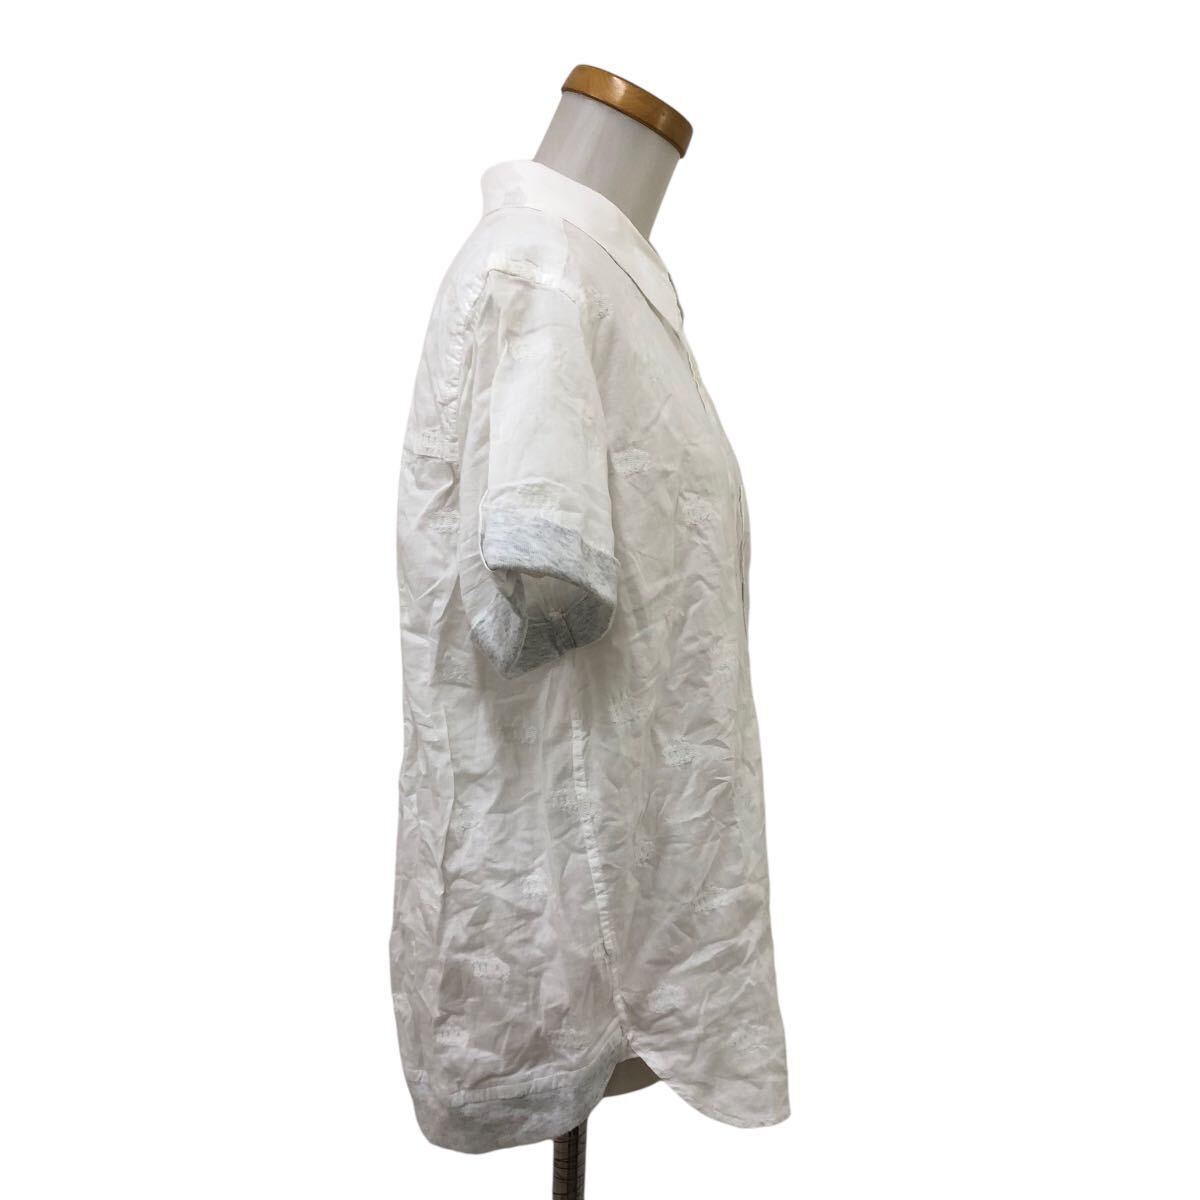 B383-13 mercibeaucoup, メルシーボークー シャツ ブラウス トップス 半袖 フロントボタン 刺繍 デザイン ホワイト 白 レディース 1_画像7